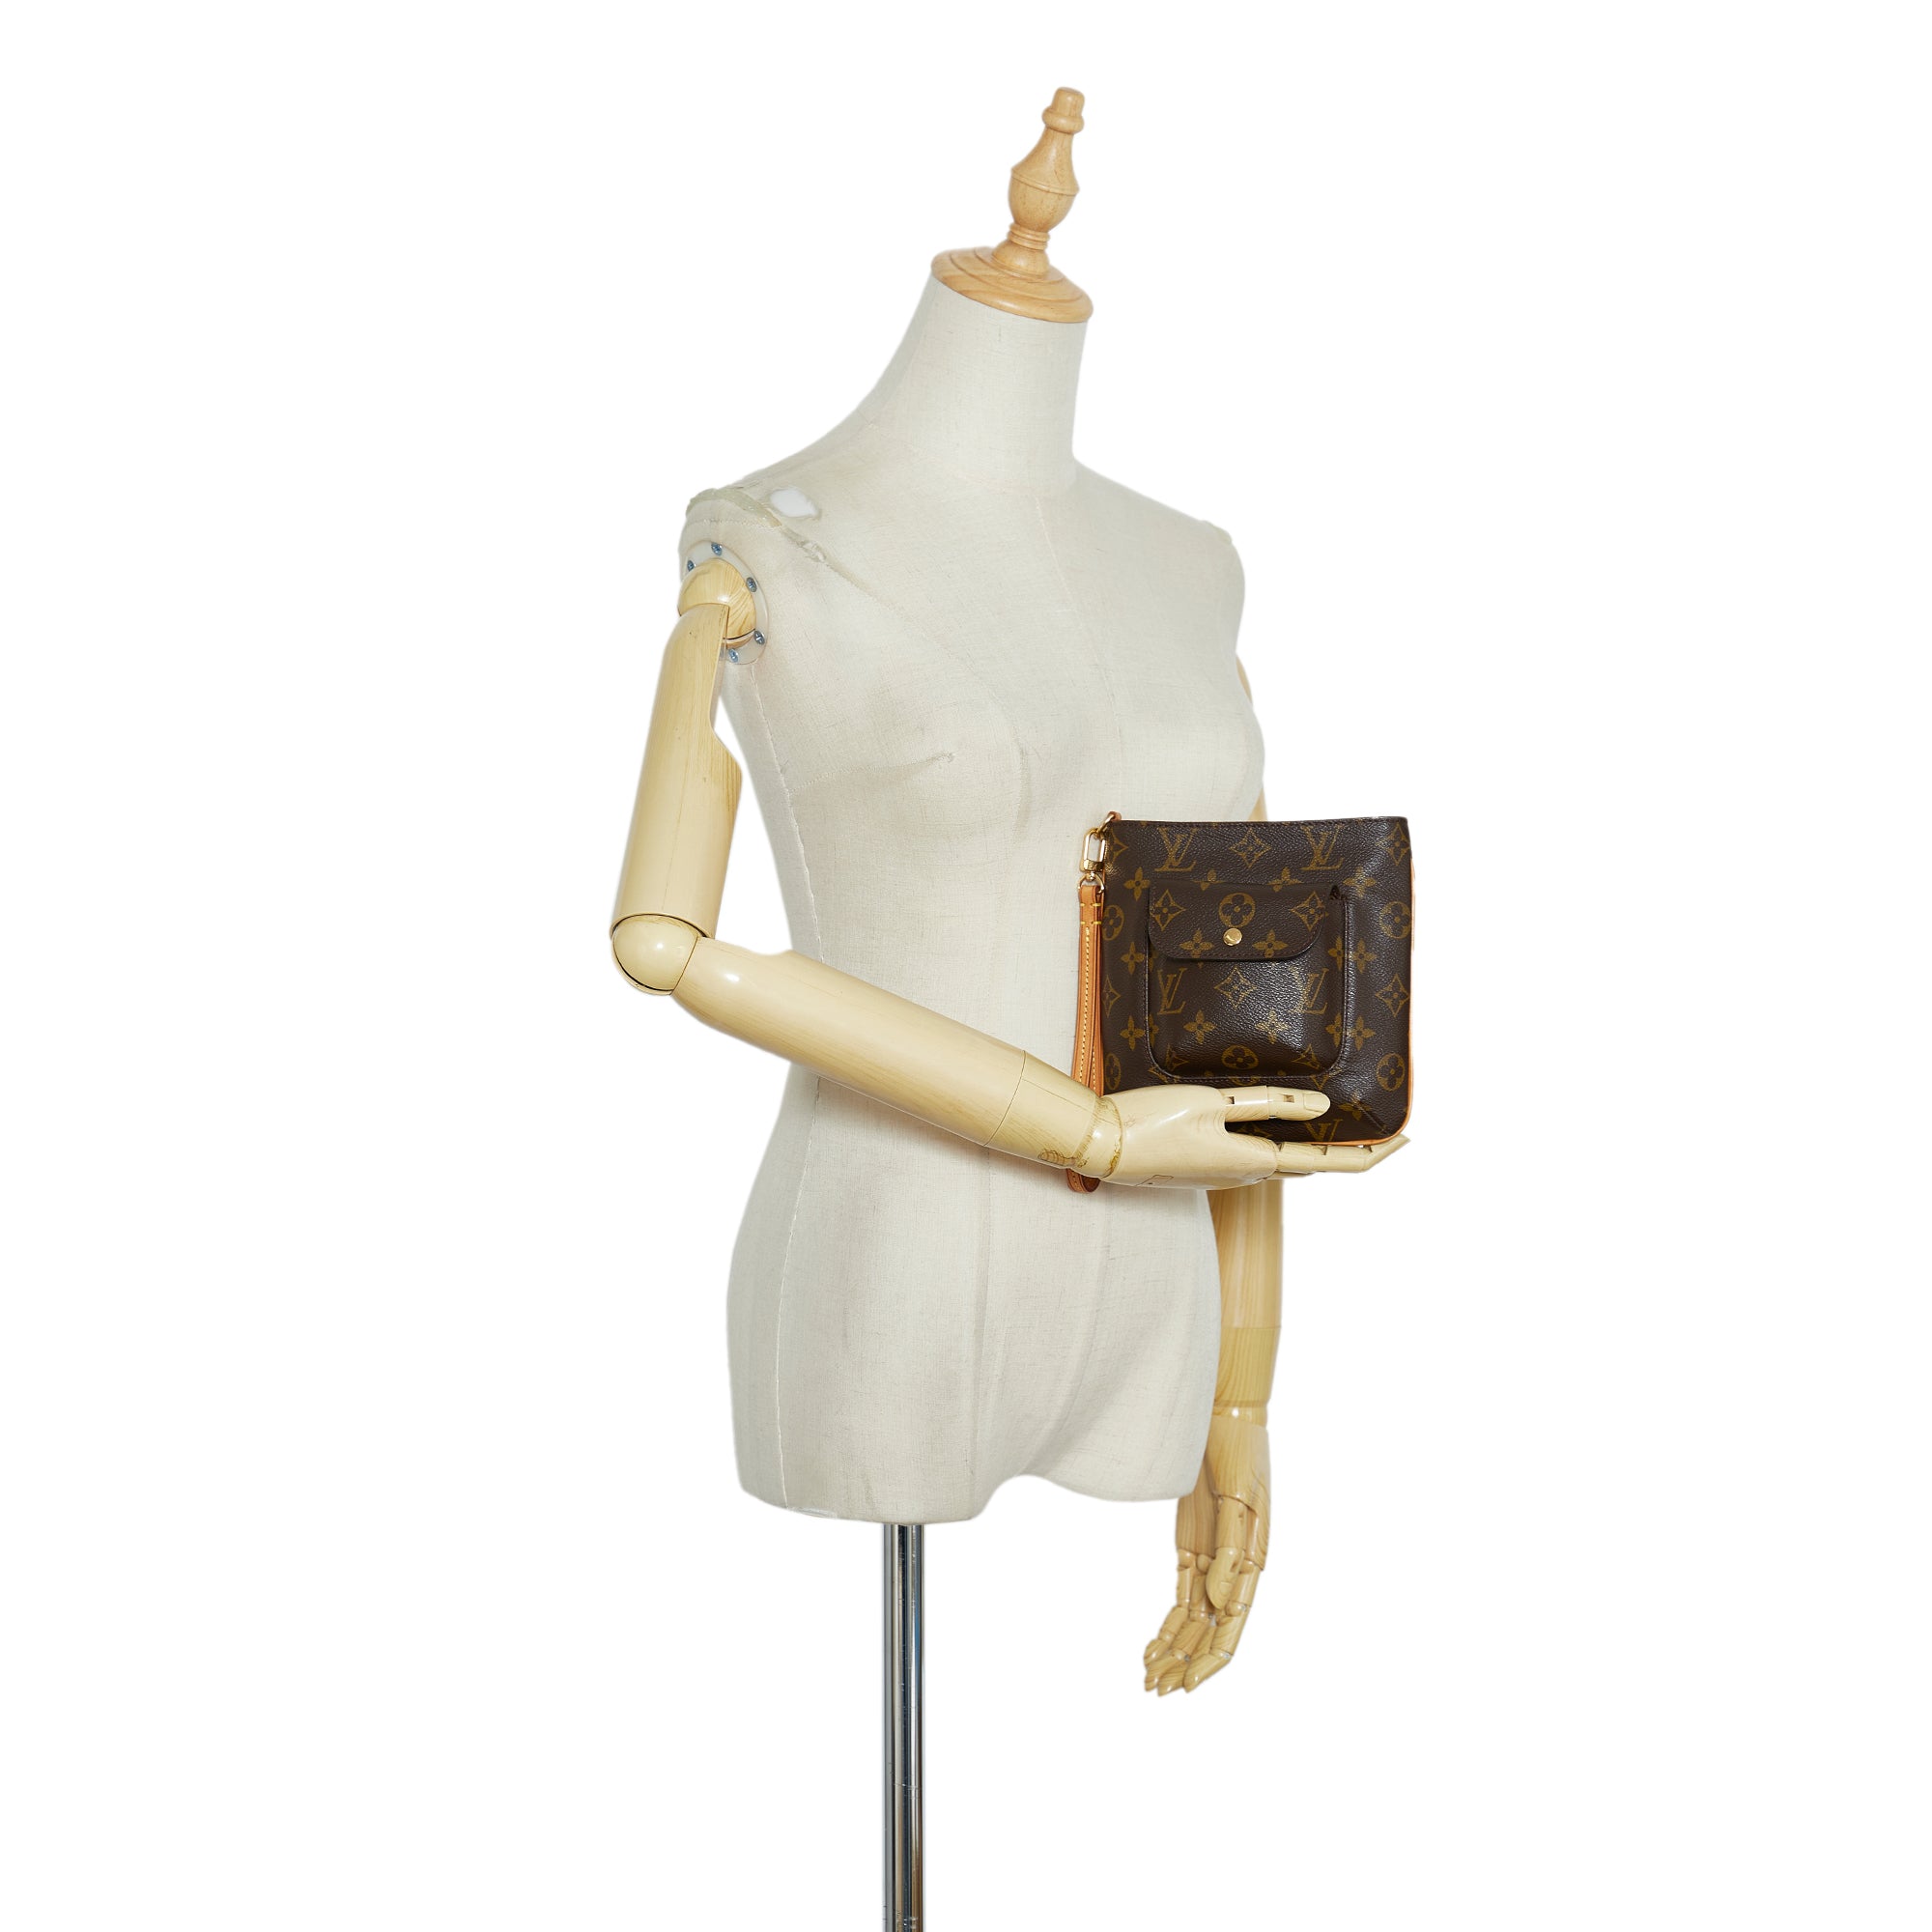 Authentic Louis Vuitton Monogram Partition Clutch Hand Bag Purse